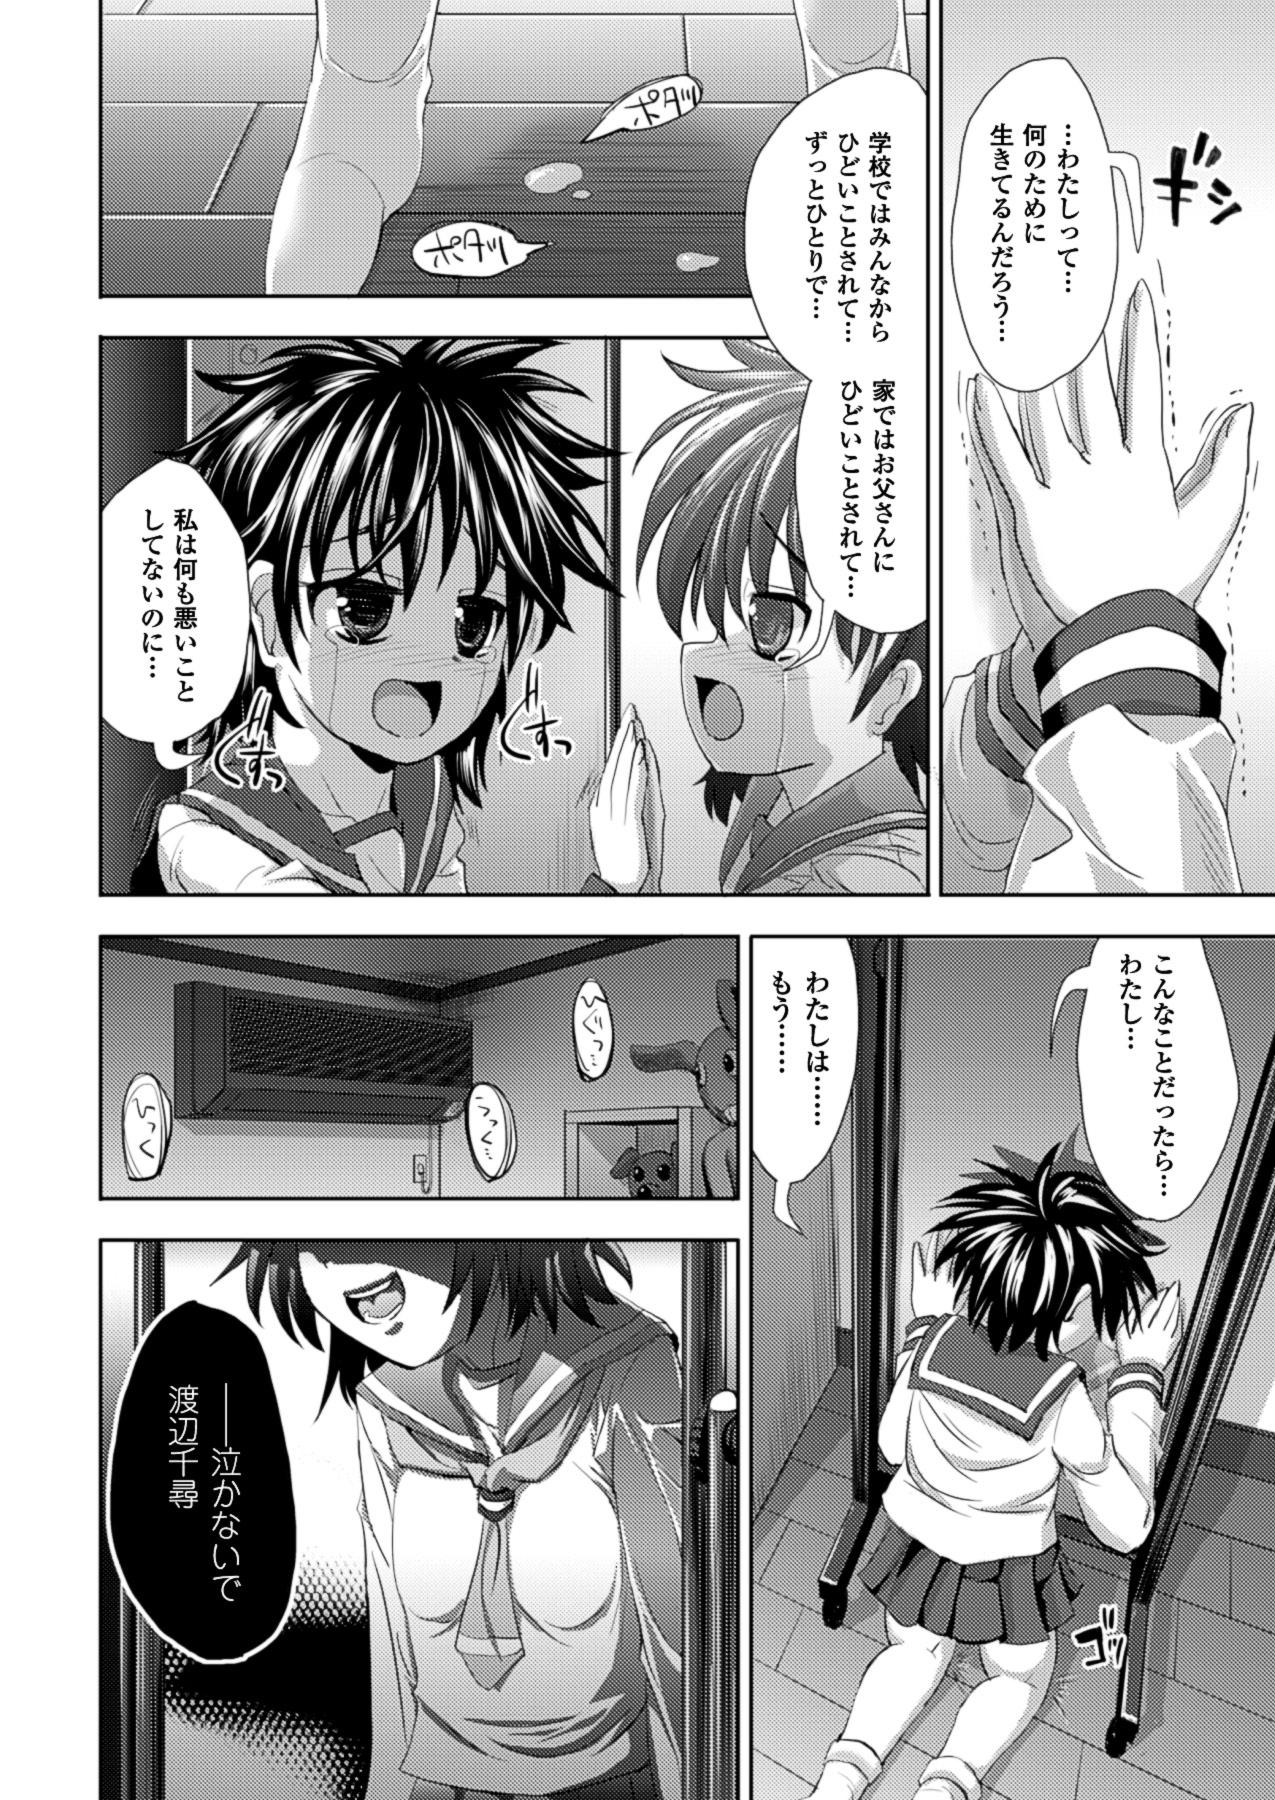 Kagami no Mukou no Watashi e | To Me of the Mirror Over There 9